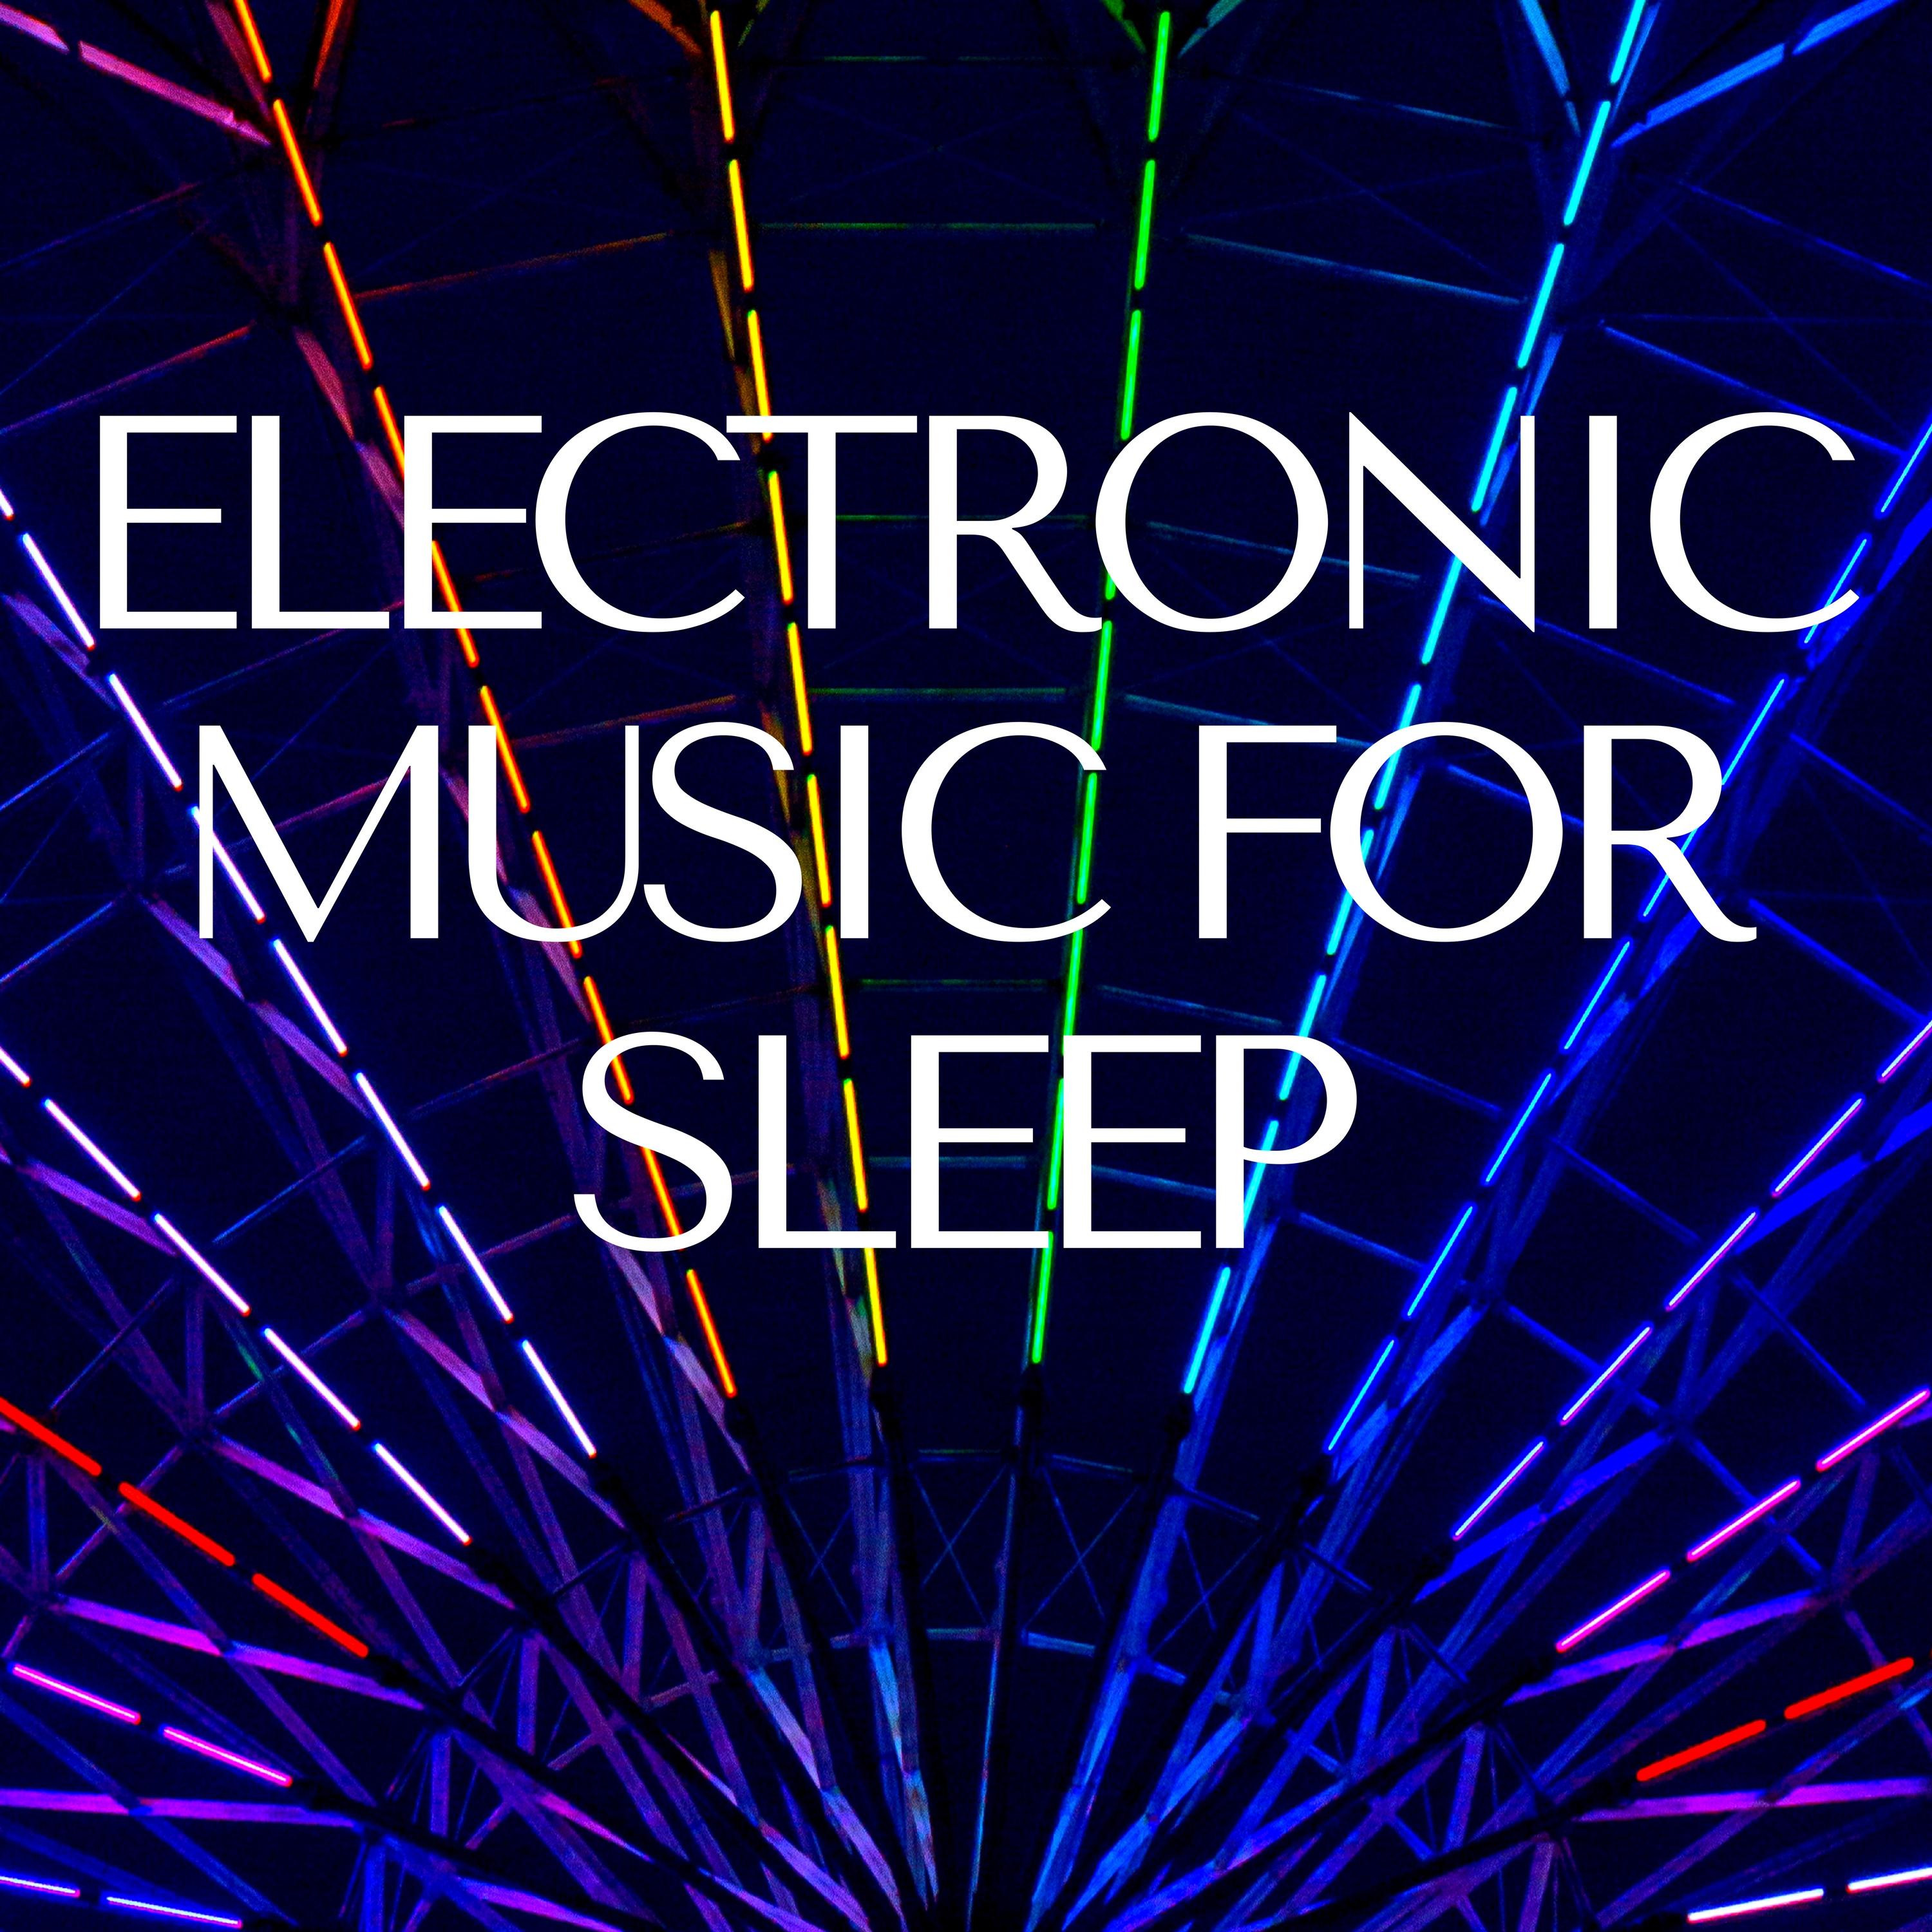 Electronic Music for Sleep - Sleeping Ambient